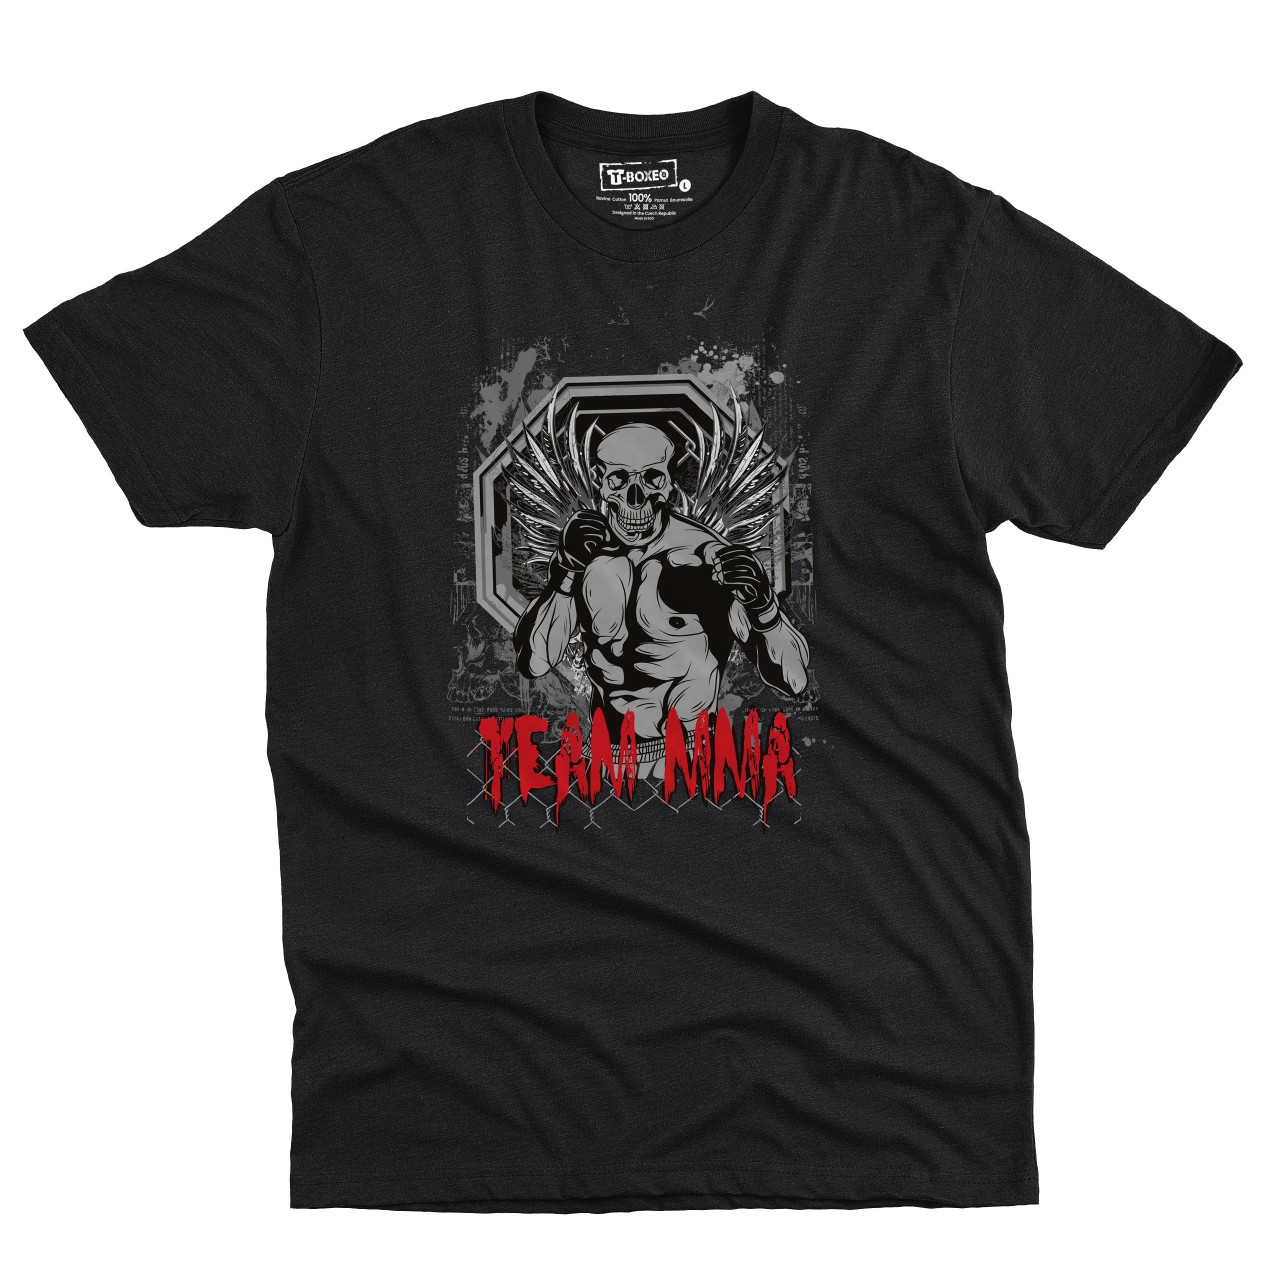 Pánské tričko s potiskem “Team MMA, svalnatý lebkoun”